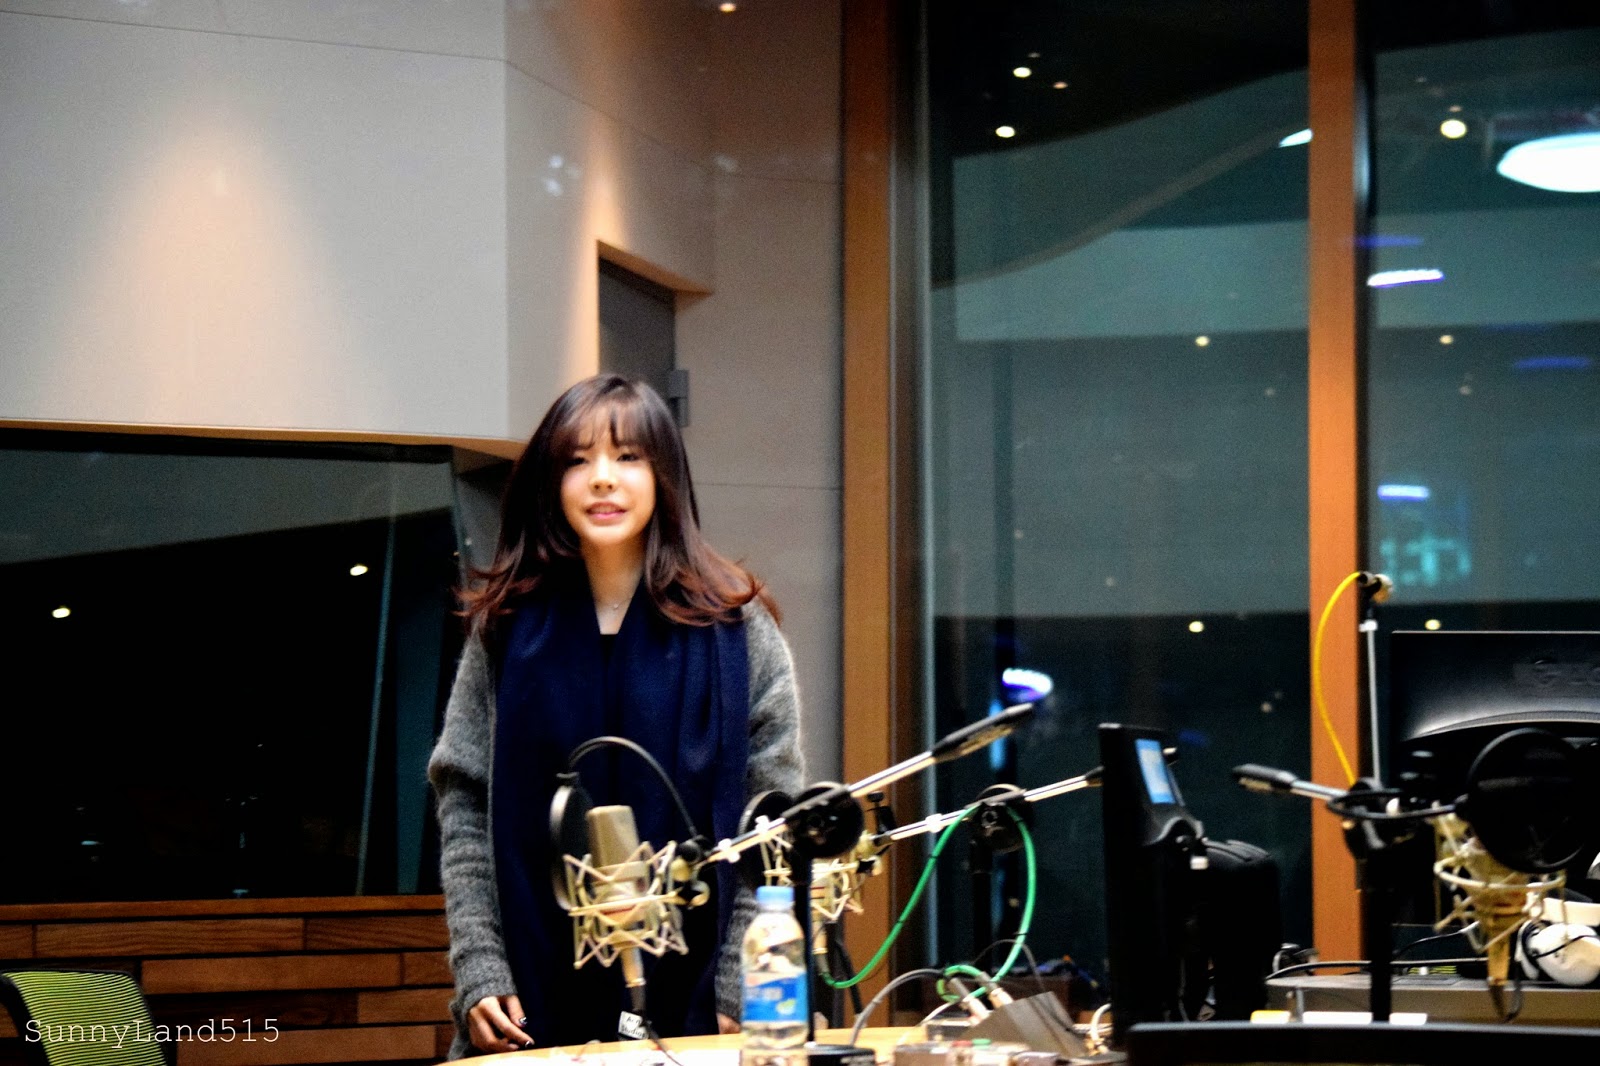 [OTHER][06-02-2015]Hình ảnh mới nhất từ DJ Sunny tại Radio MBC FM4U - "FM Date" - Page 10 DSC_0002_Fotor